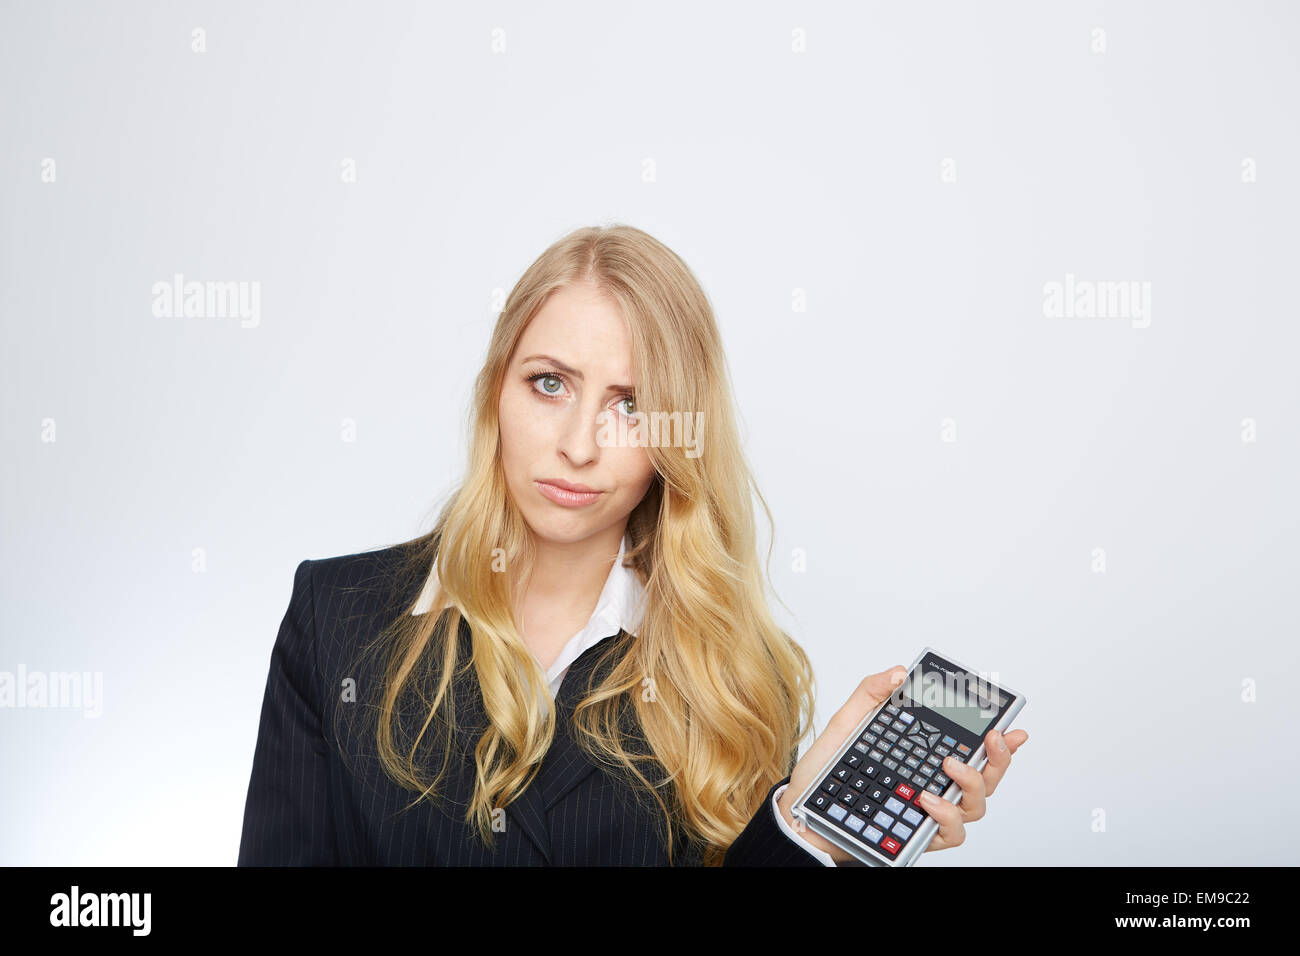 Attractive smiling business woman avec la calculatrice Banque D'Images